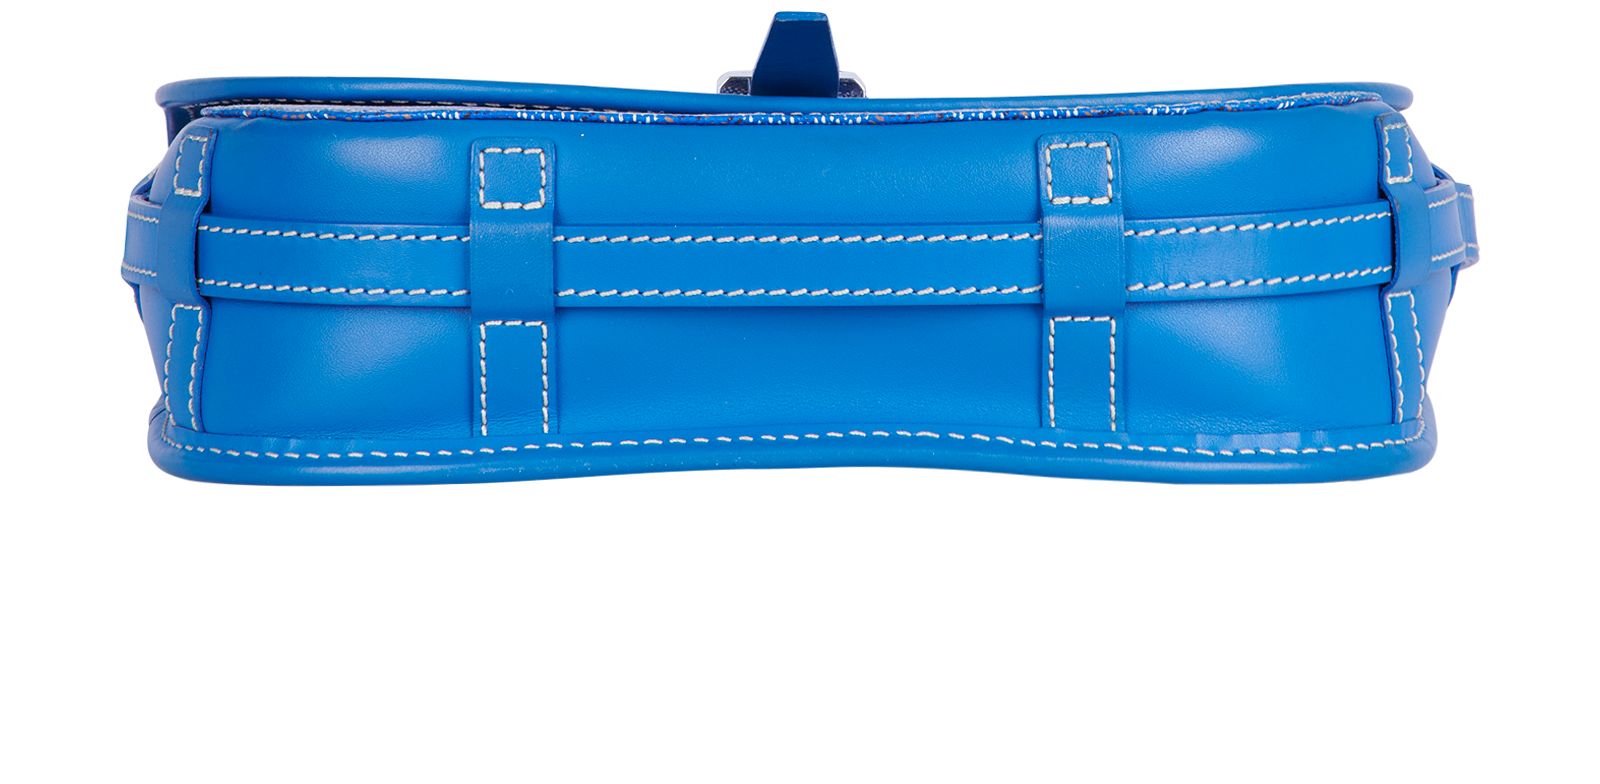 Belvedere II MM – Keeks Designer Handbags